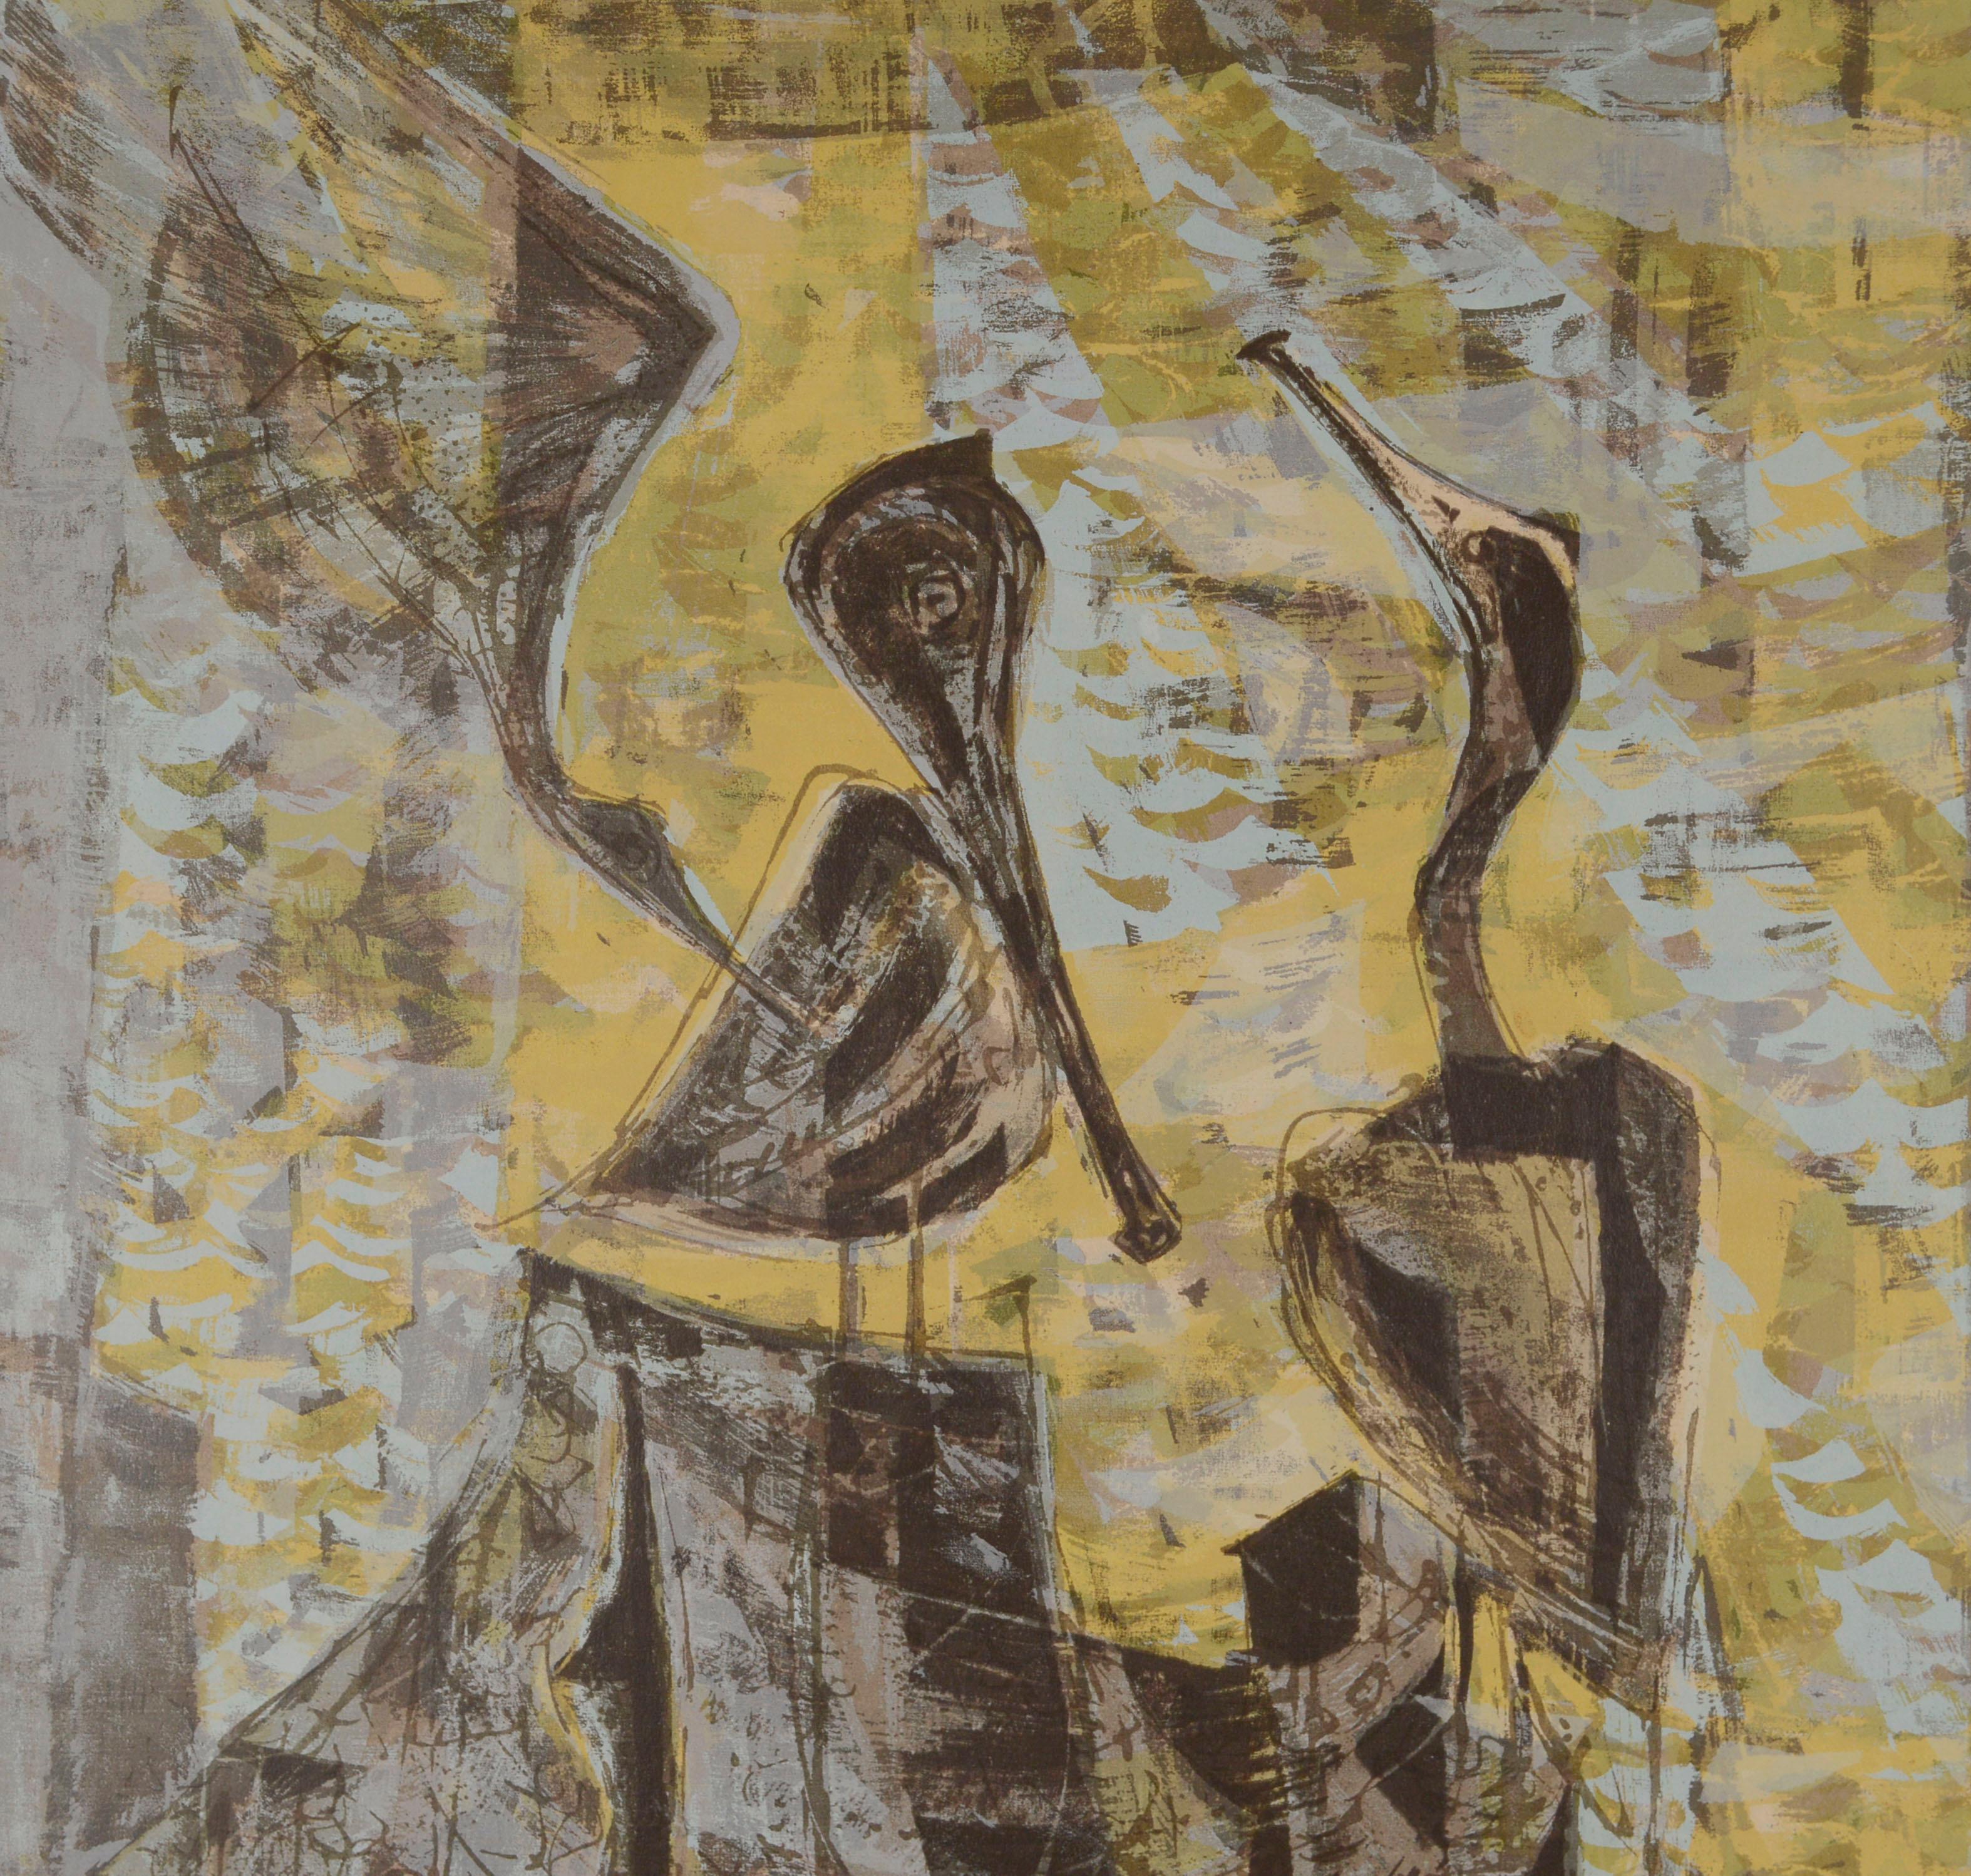 Magnifique abstraction figurative moderniste avec des oiseaux, une sérigraphie originale à grande échelle à double panneau vertical, 